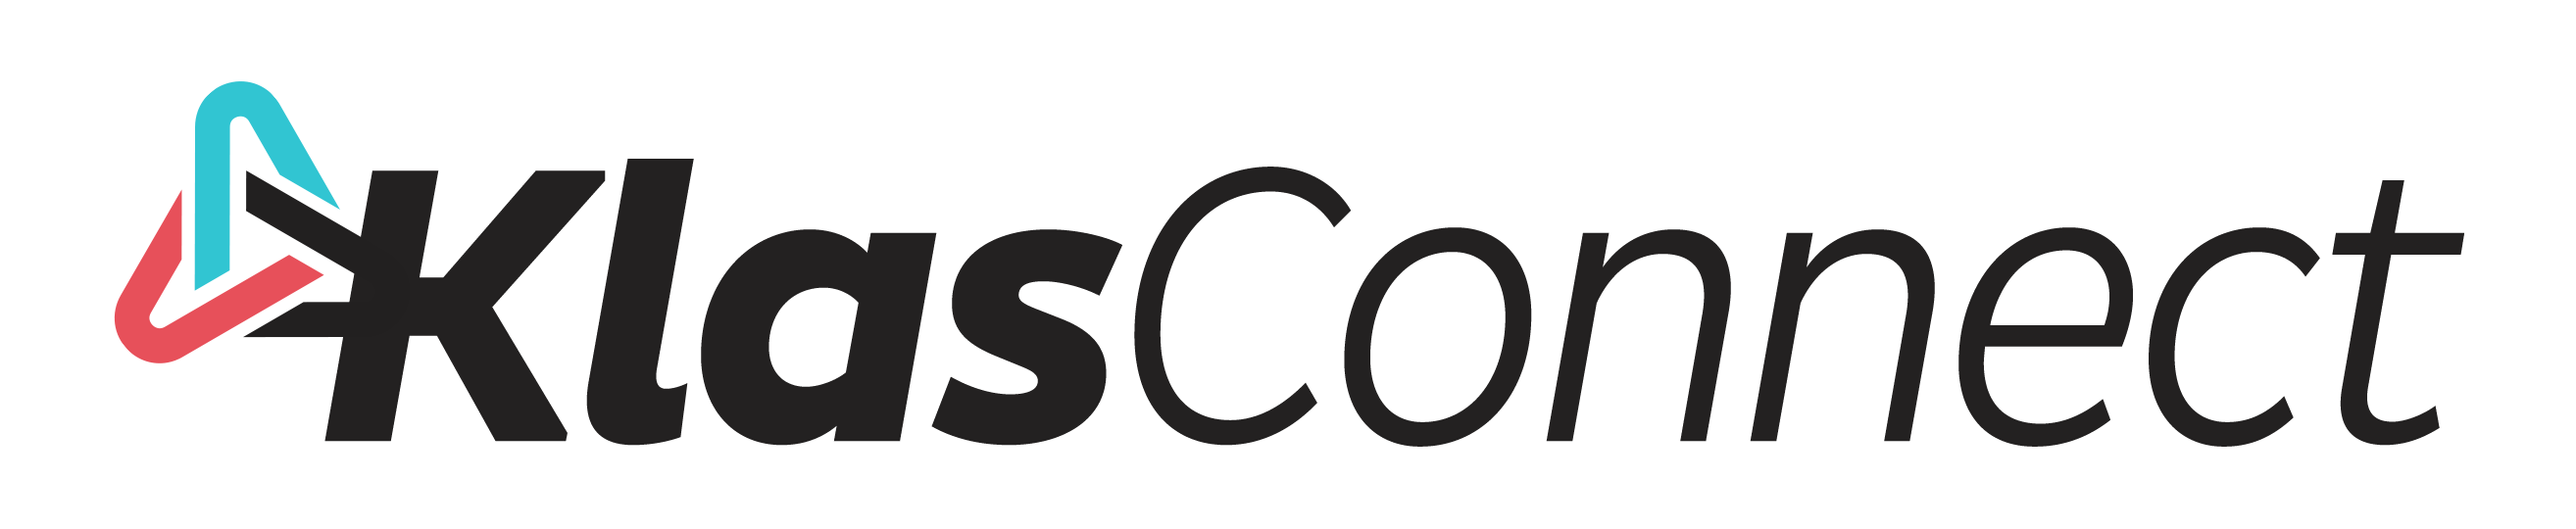 klasconnect logo